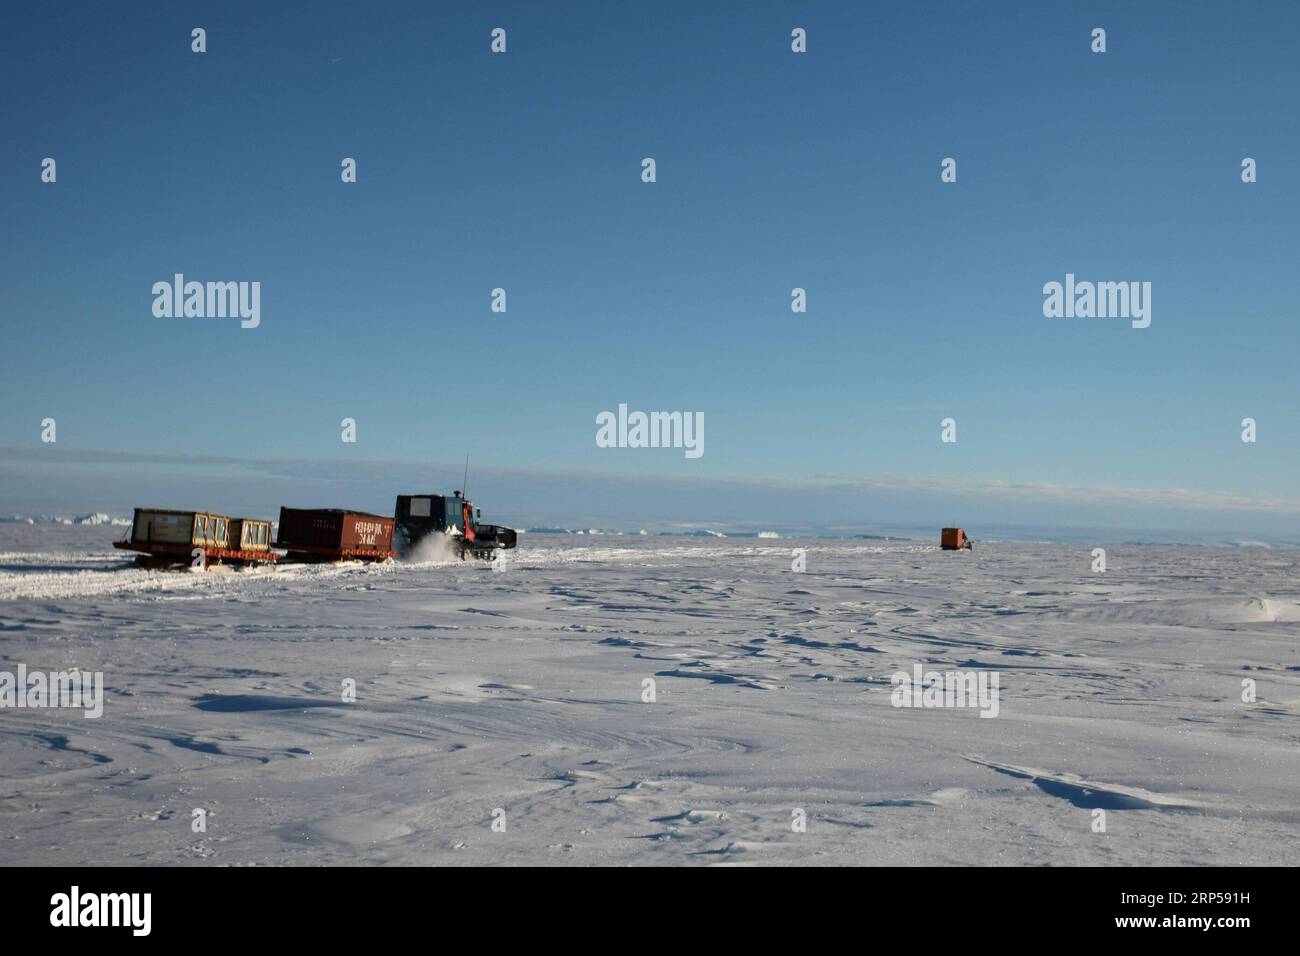 (181204) -- A BORDO DI XUELONG, 4 dicembre 2018 (Xinhua) -- motoslitte caricate di rifornimenti dirigono la stazione di Zhongshan in Antartide, 2 dicembre 2018. Il rompighiaccio di ricerca cinese Xuelong, noto anche come il Drago delle nevi, è ora a 44 chilometri dalla stazione di Zhongshan. Le operazioni di scarico sono state effettuate dopo la determinazione delle rotte. (Xinhua/Liu Shiping) (gxn) ANTARCTICA-XUELONG-ZHONGSHAN STATION-UNLOADING PUBLICATIONxNOTxINxCHN Foto Stock